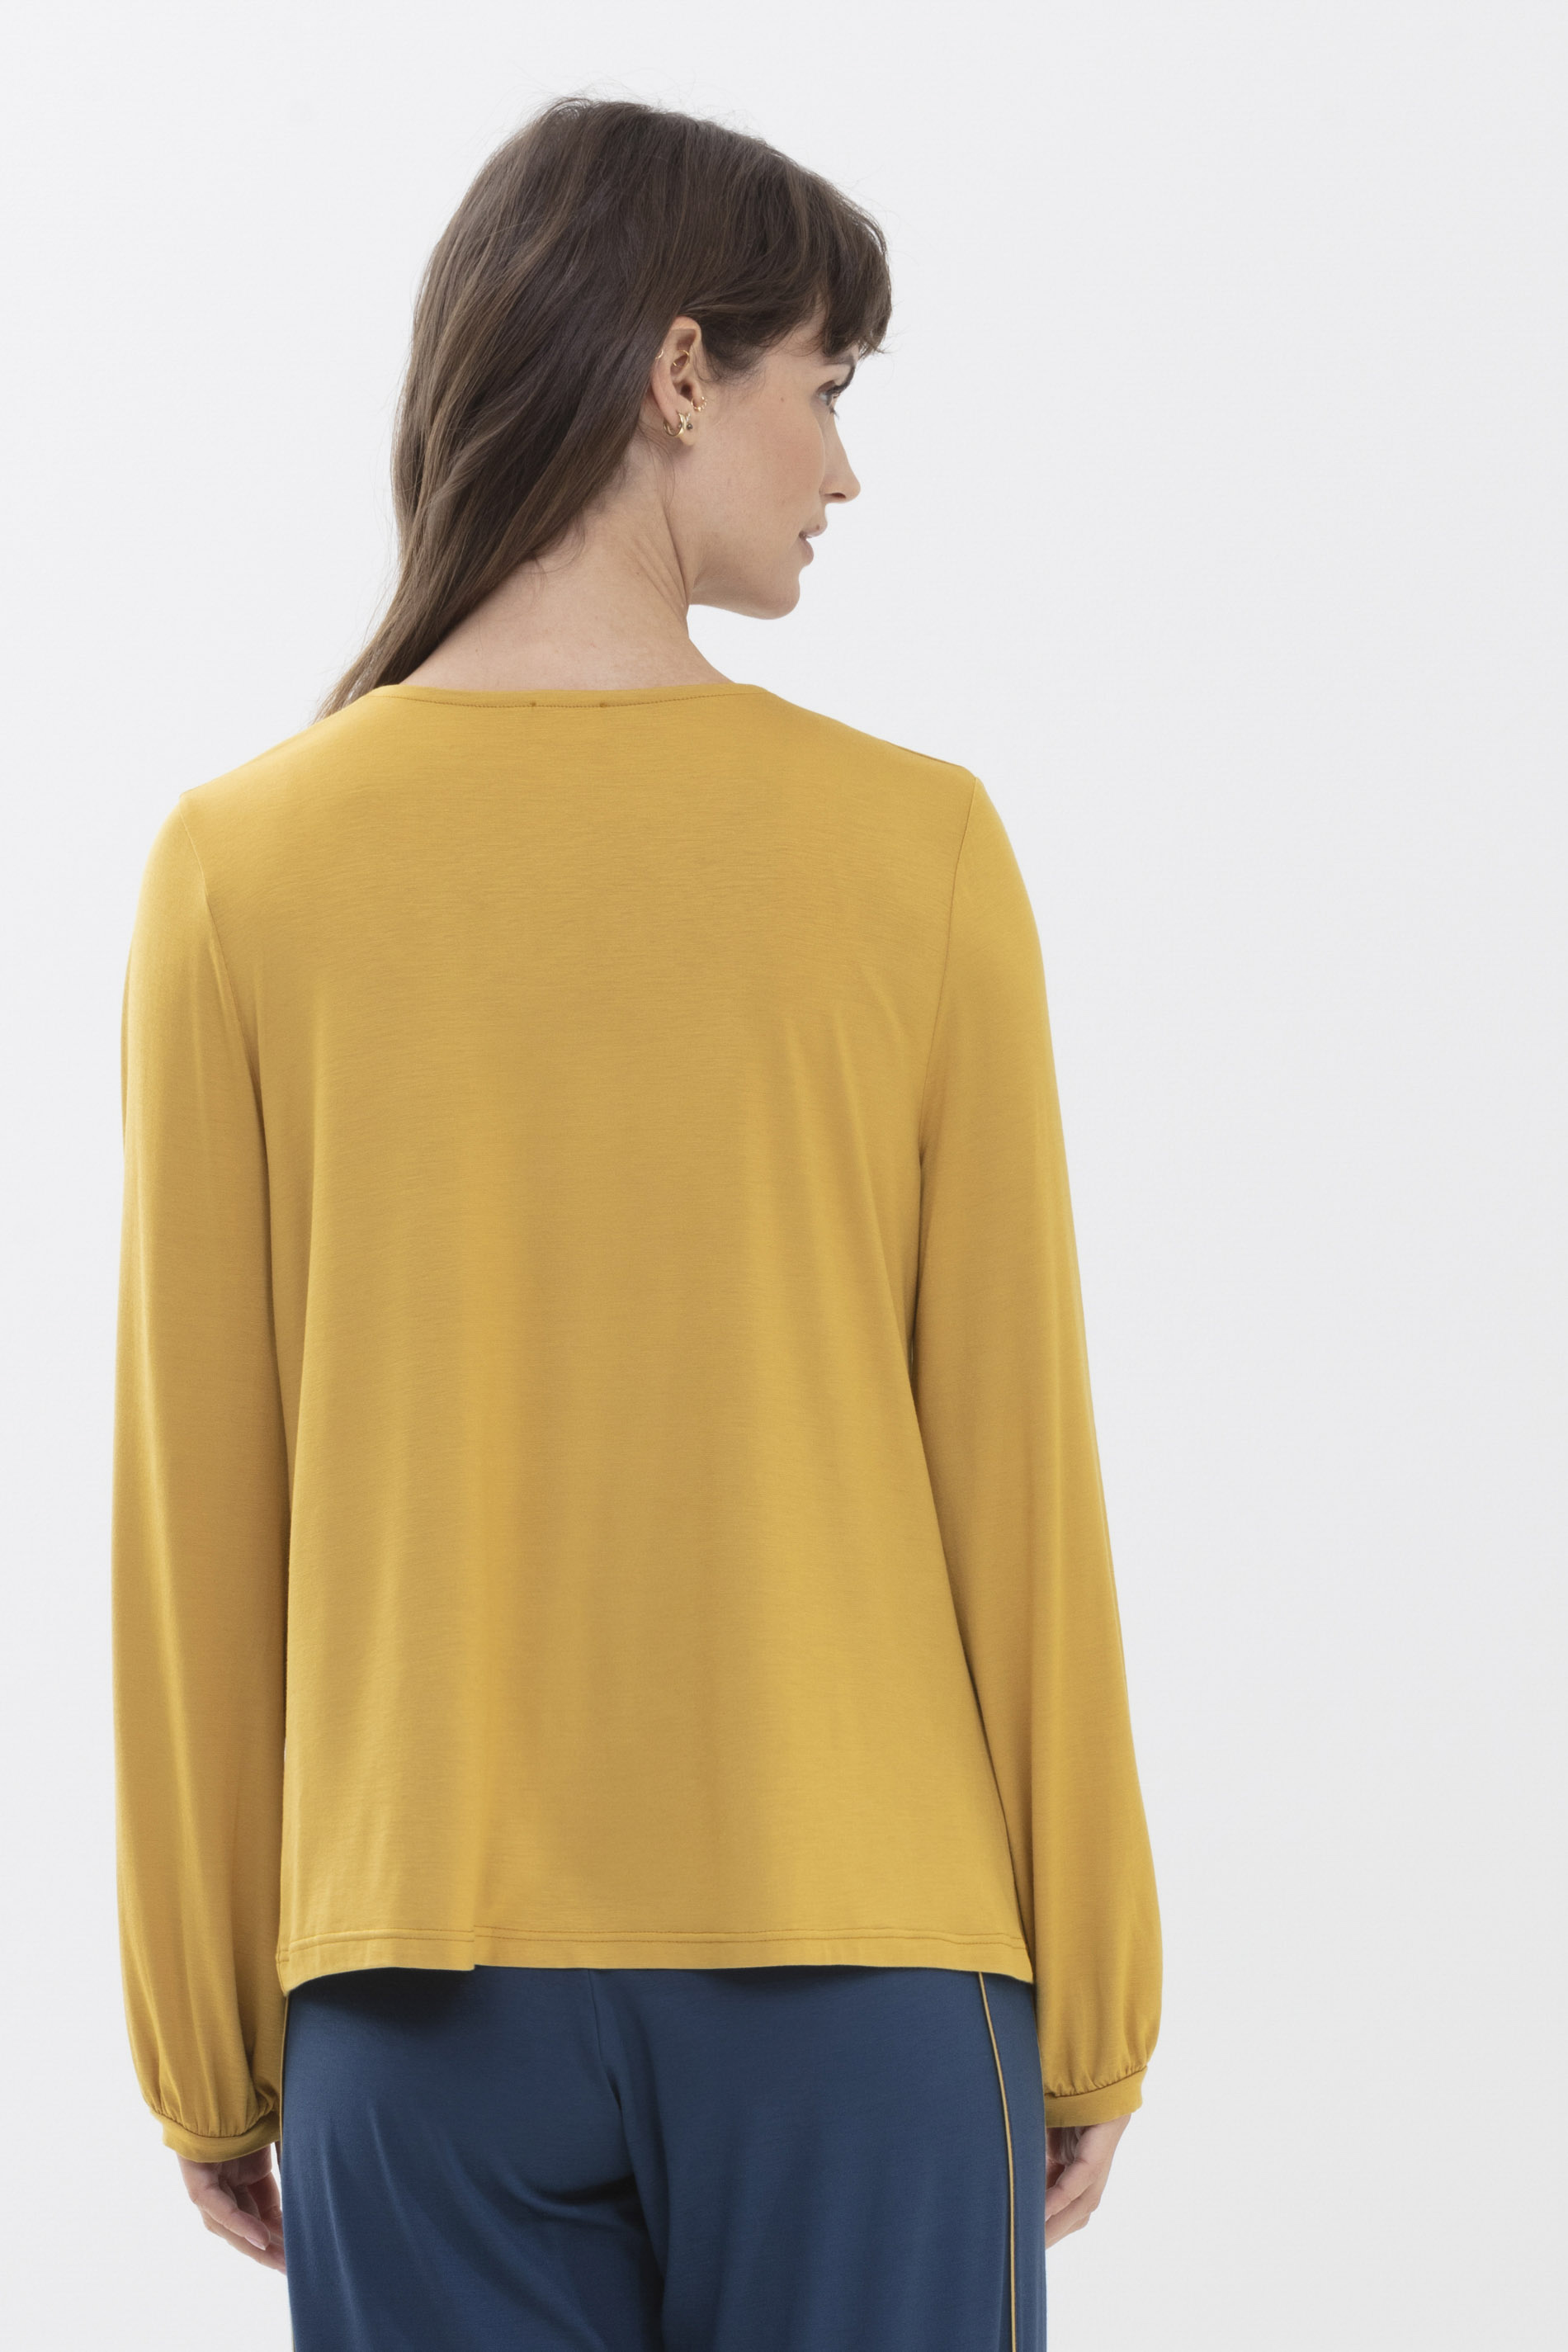 Shirt Wintergold Serie Alena Rückansicht | mey®